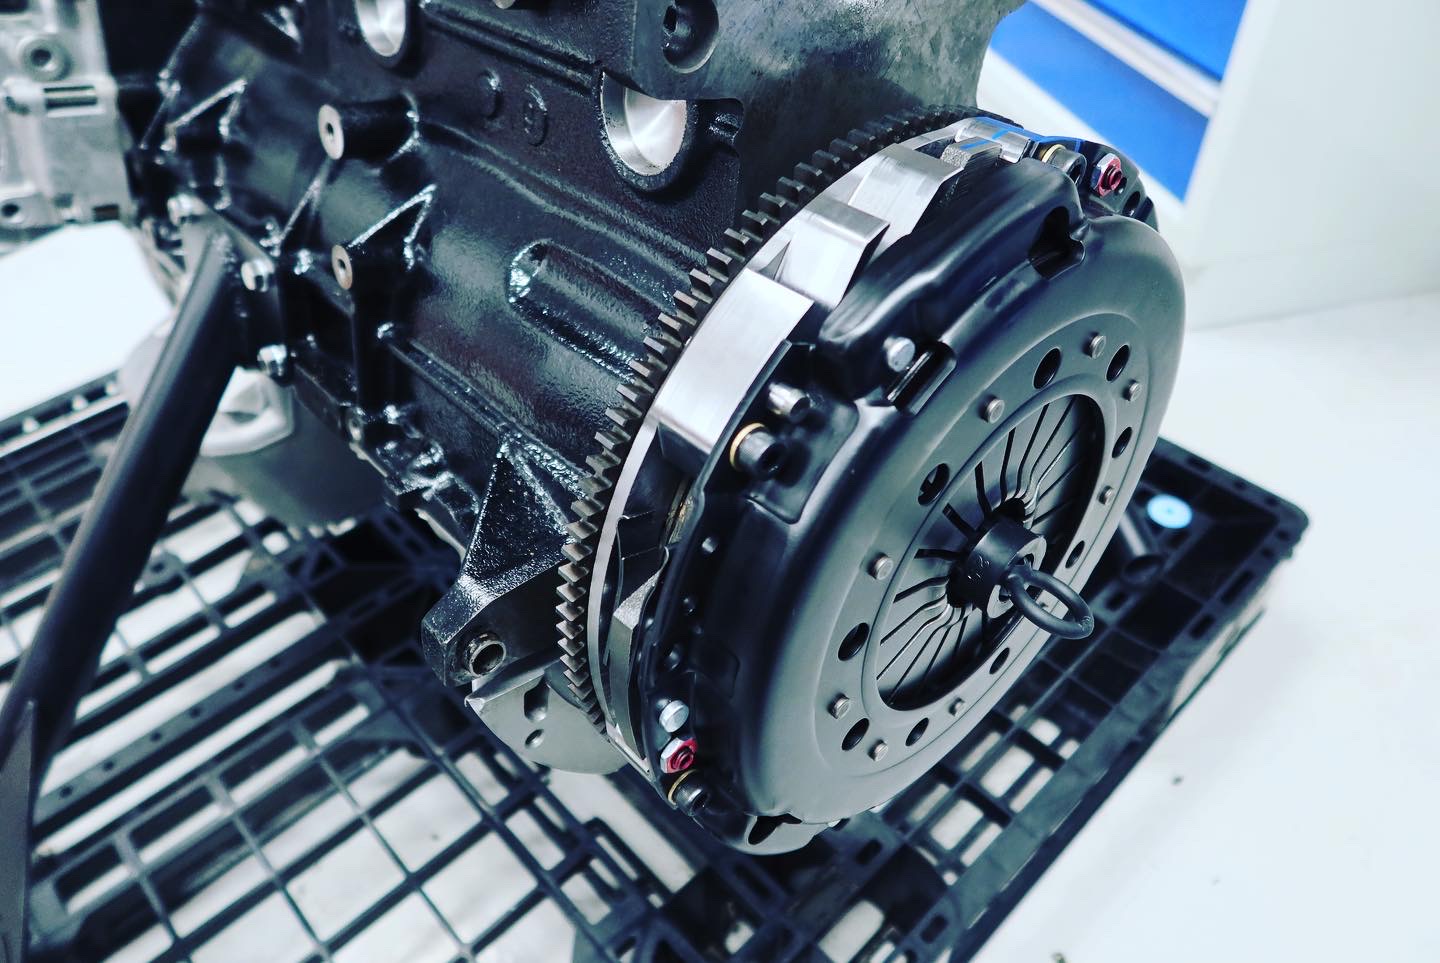 Workshop Journal: Jack's M50 Turbo Engine Build